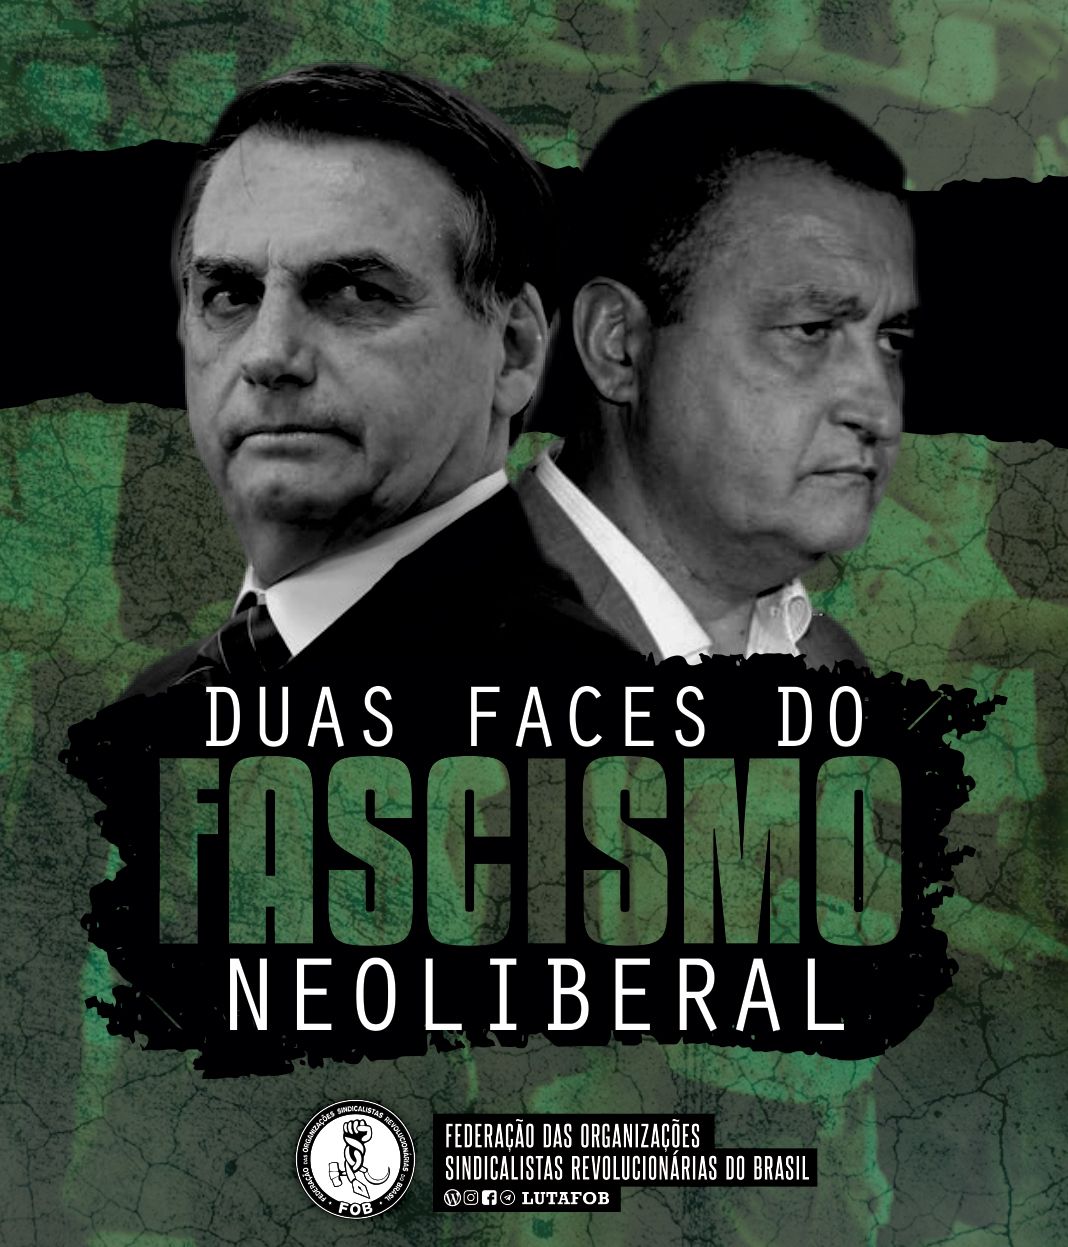 Bolsonaro e Rui Costa: fascismo e destruição neoliberal